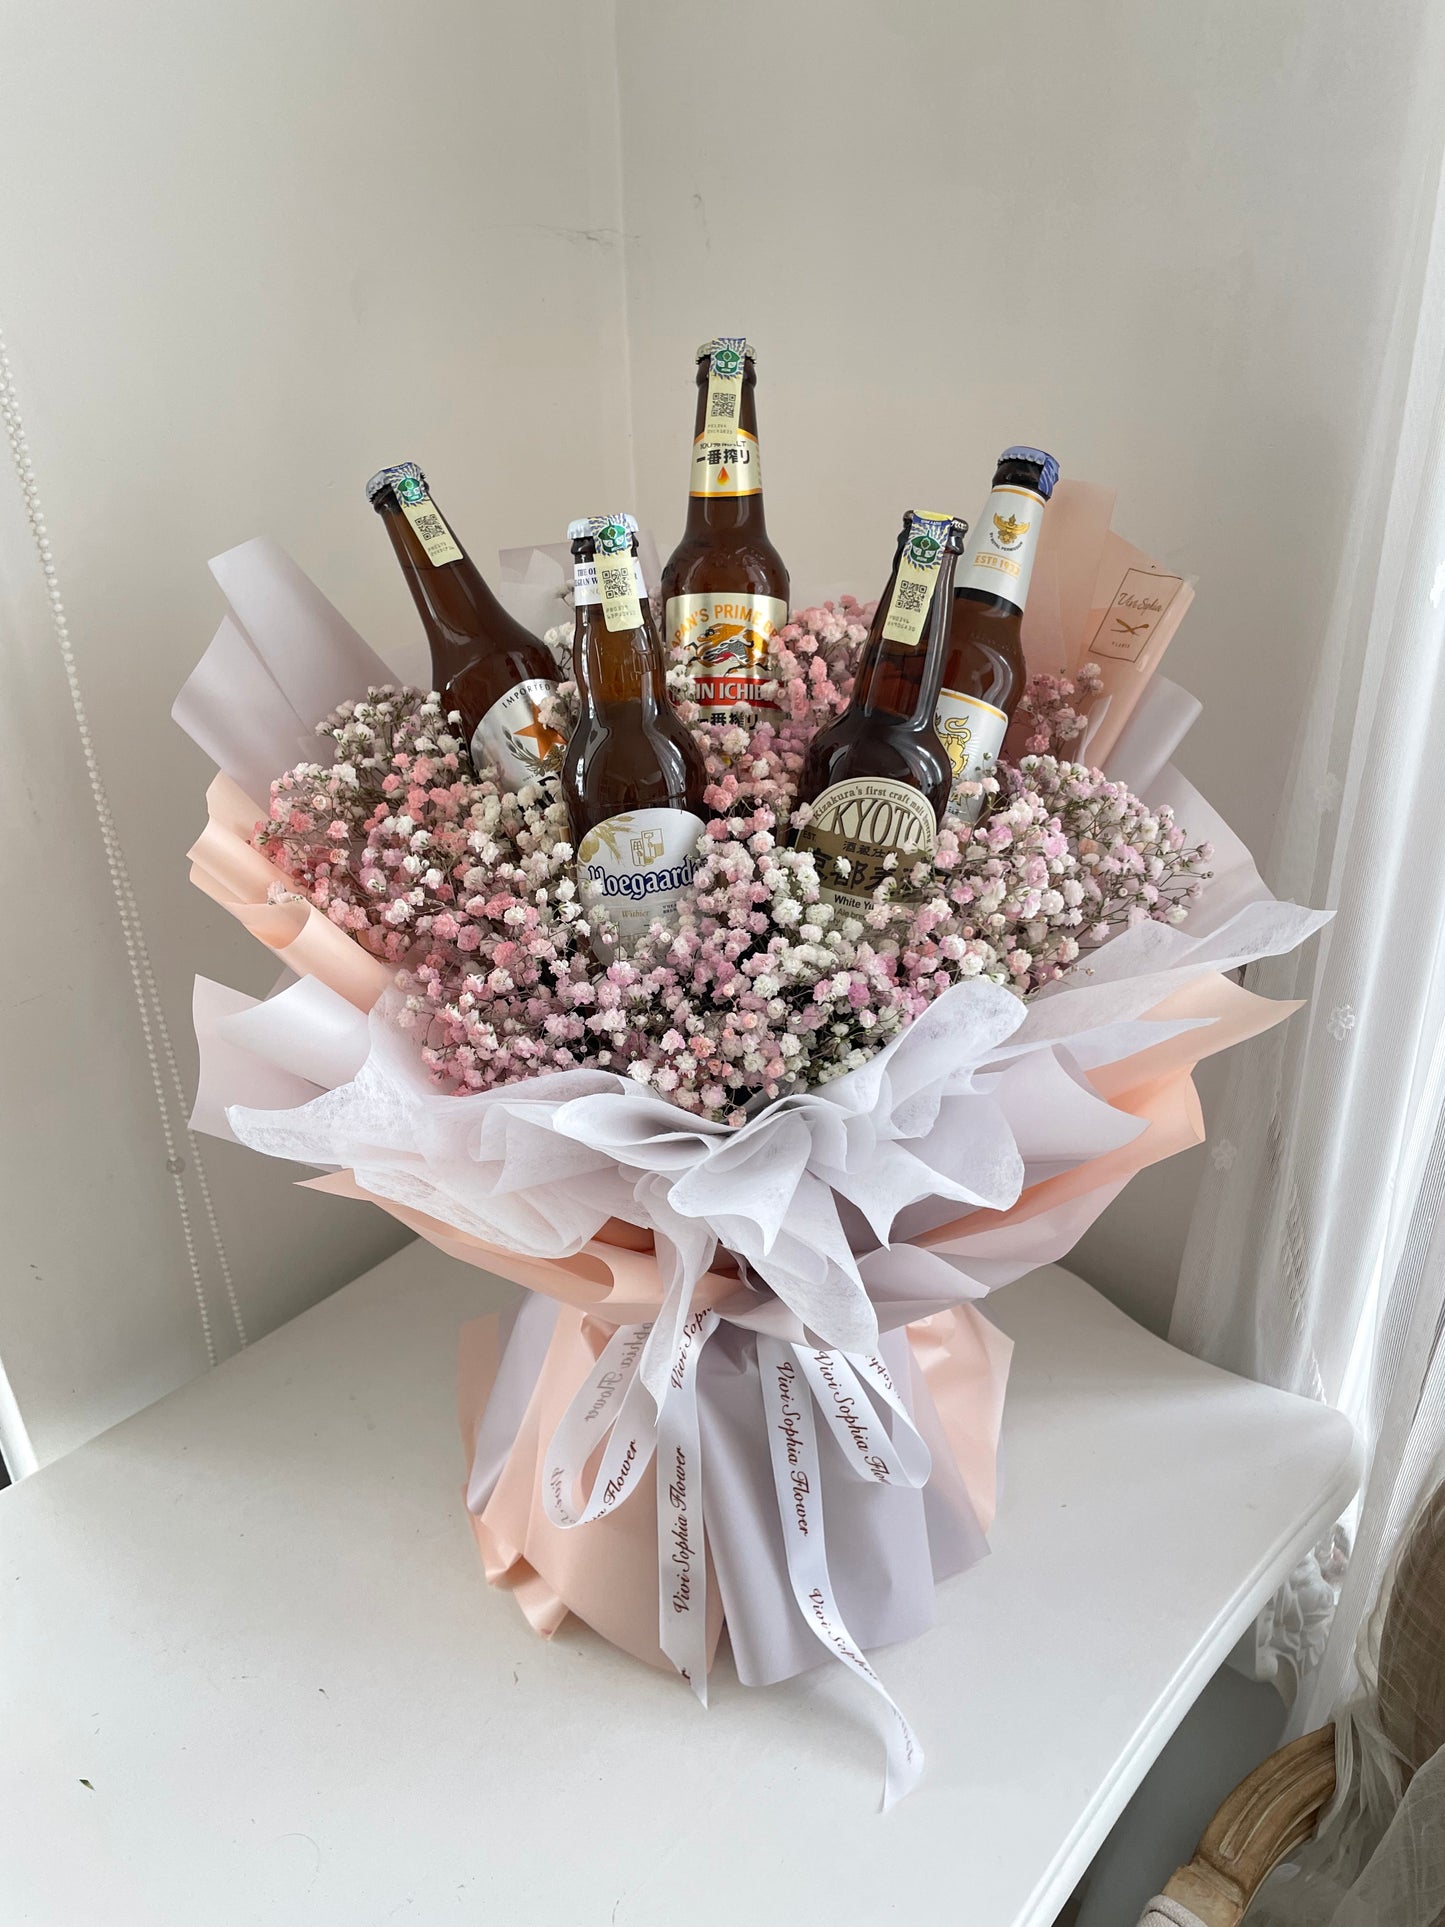 Beer bouquet